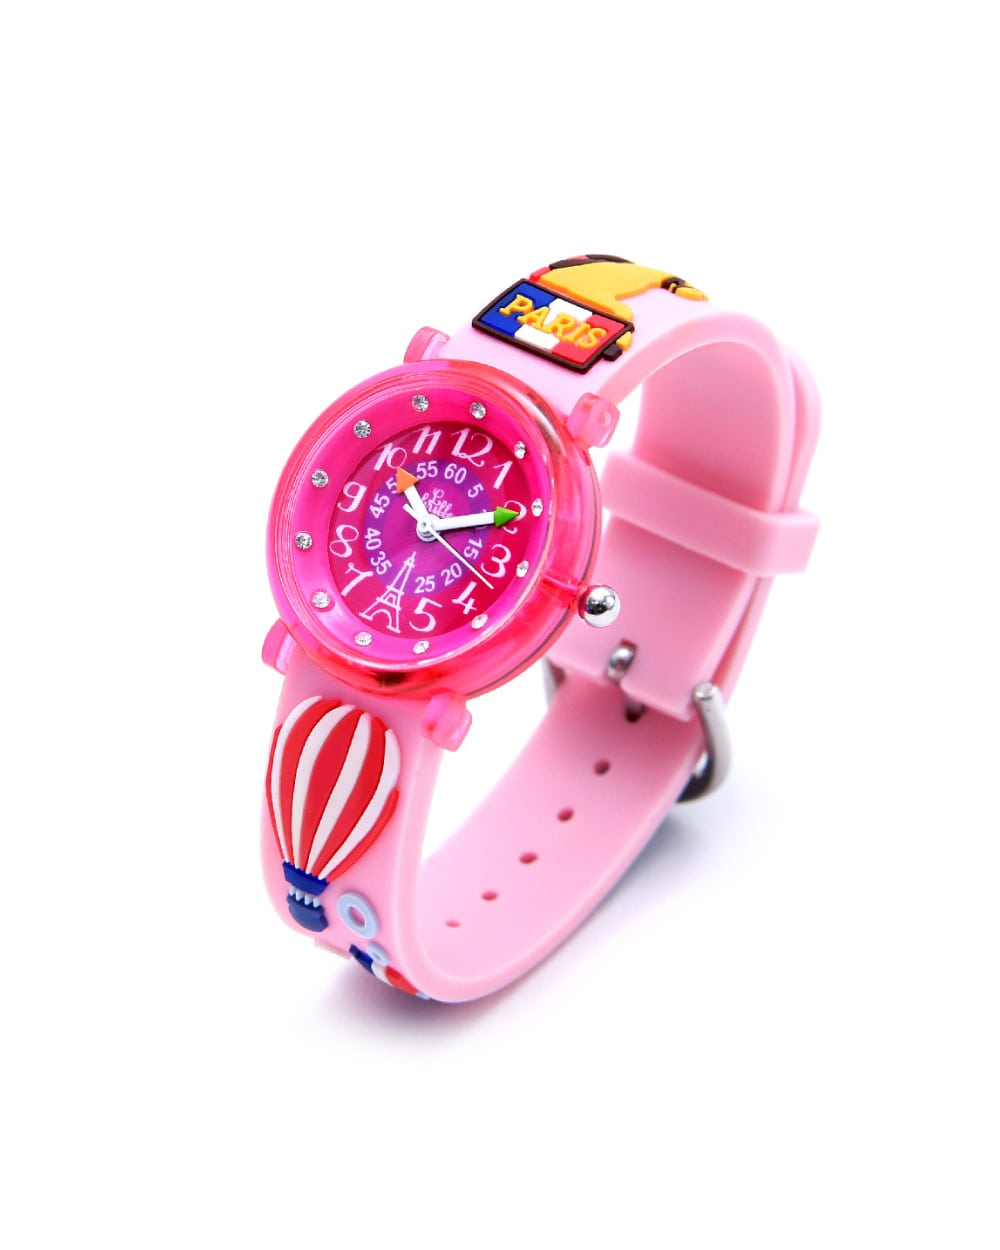 베이비와치 프랑스 아동손목시계 - ZAP Bonjour Paris Pink (봉쥬르 파리 핑크)